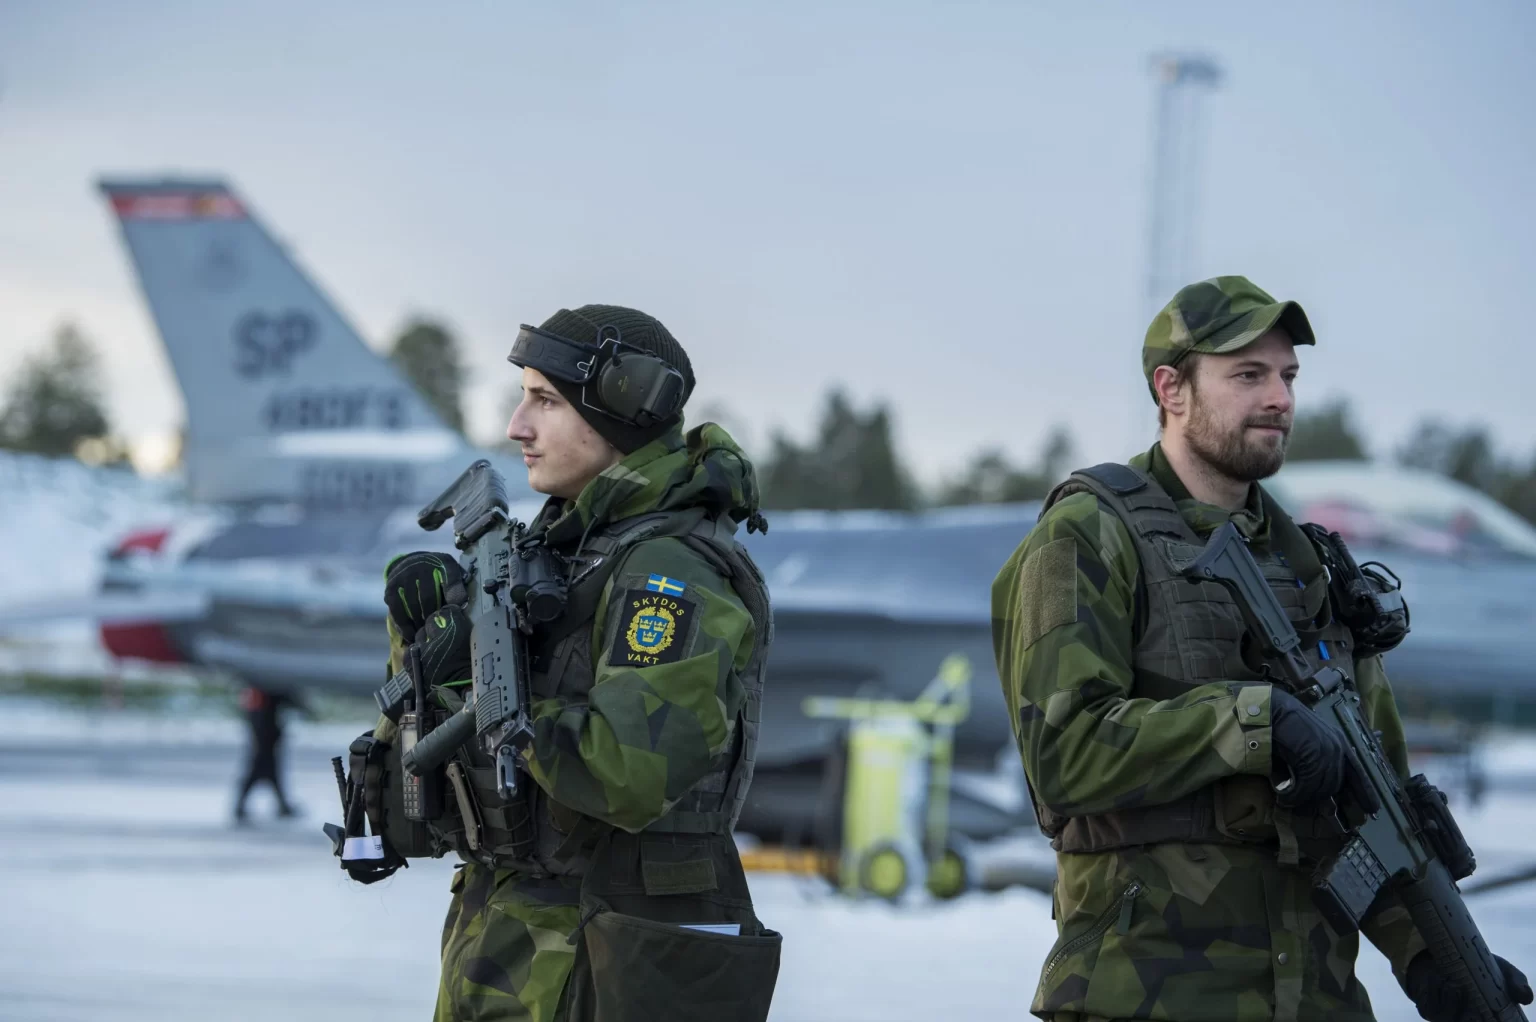 الجيش السويدي يحظر تطبيق "تيك توك" على أجهزة عسكرييه